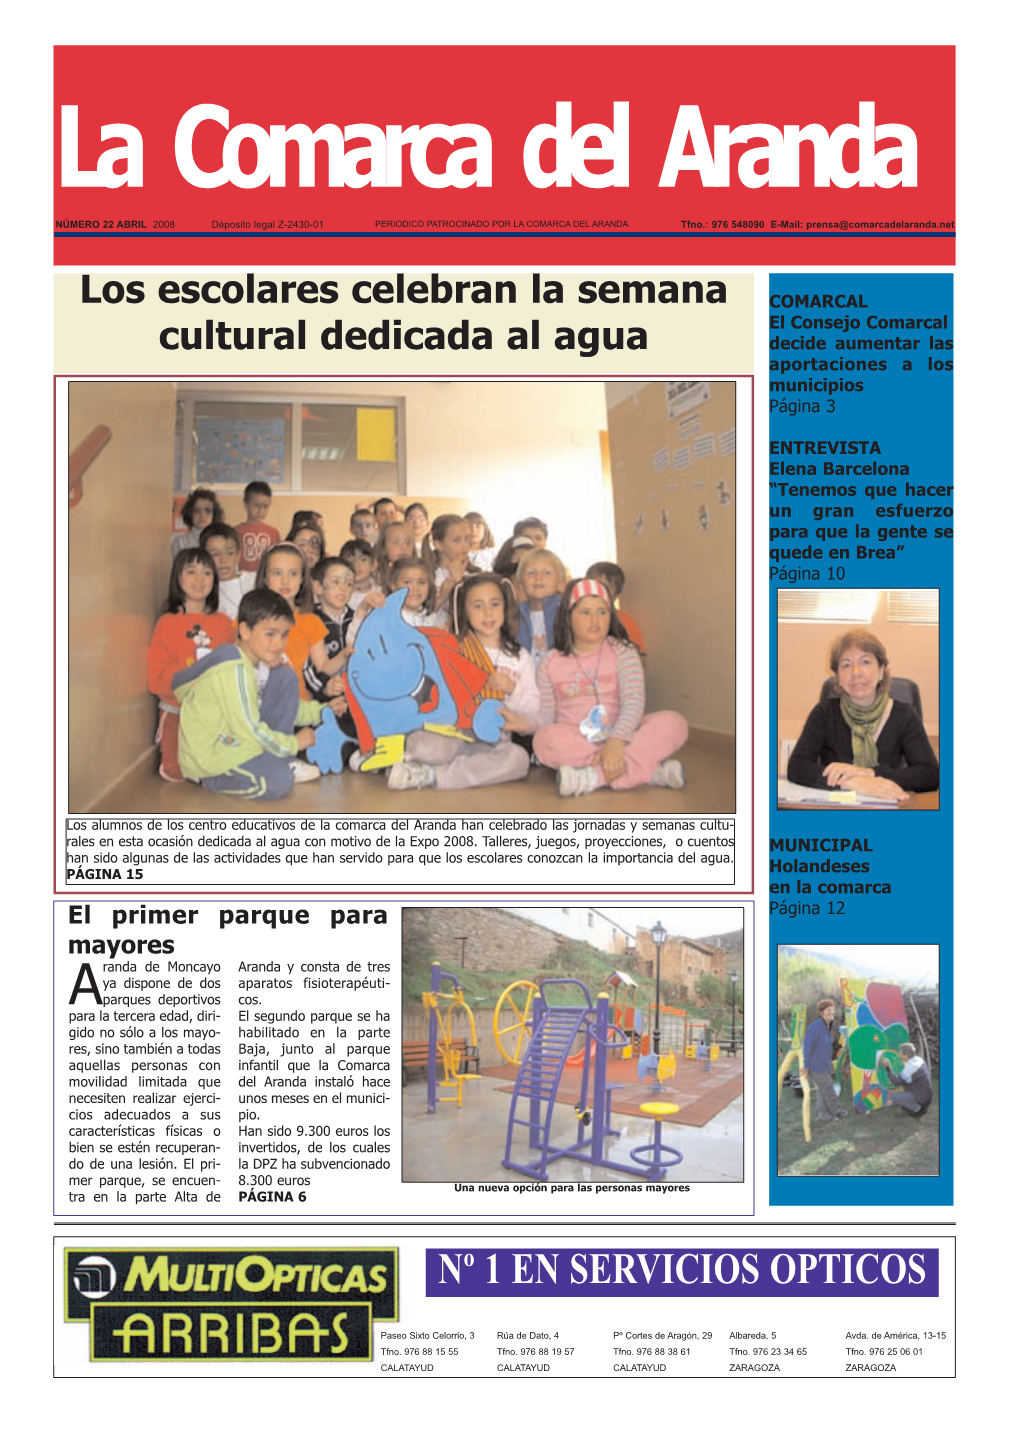 Los Escolares Celebran La Semana Cultural Dedicada Al Agua